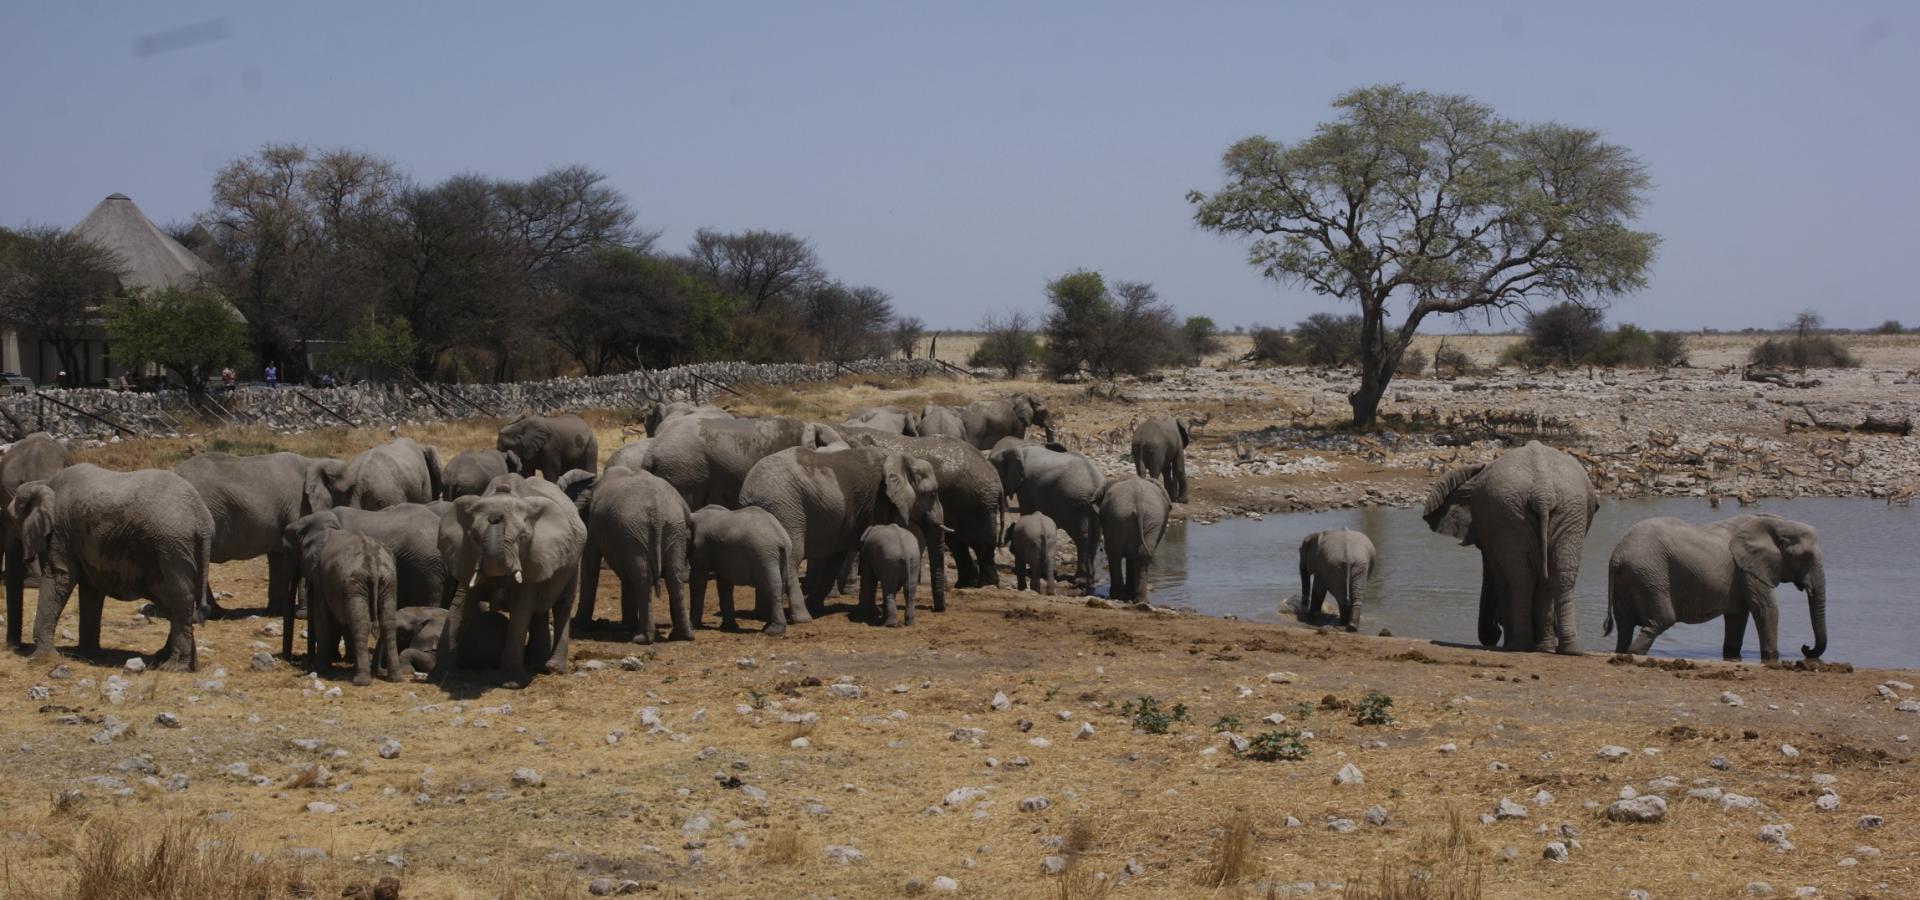 Lassen Sie sich faszinieren von riesigen Elefantenherden im Etoscha National Park in Namibia